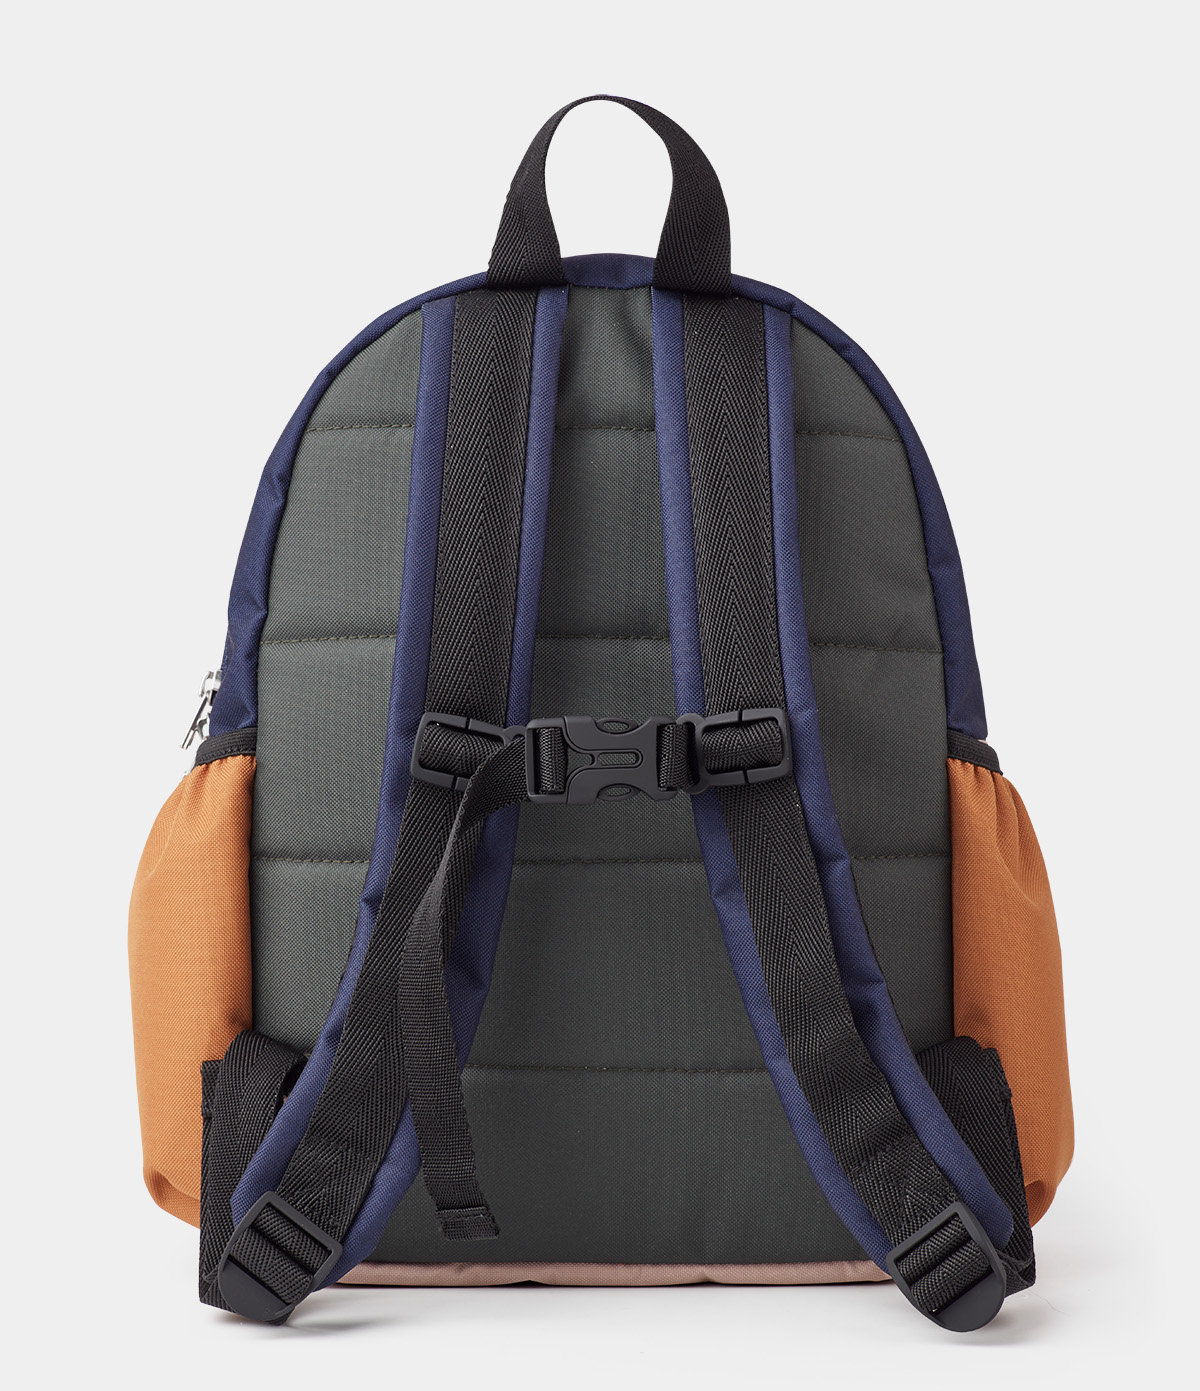 Produktbillede packshots Liewood wally rygsæk taske